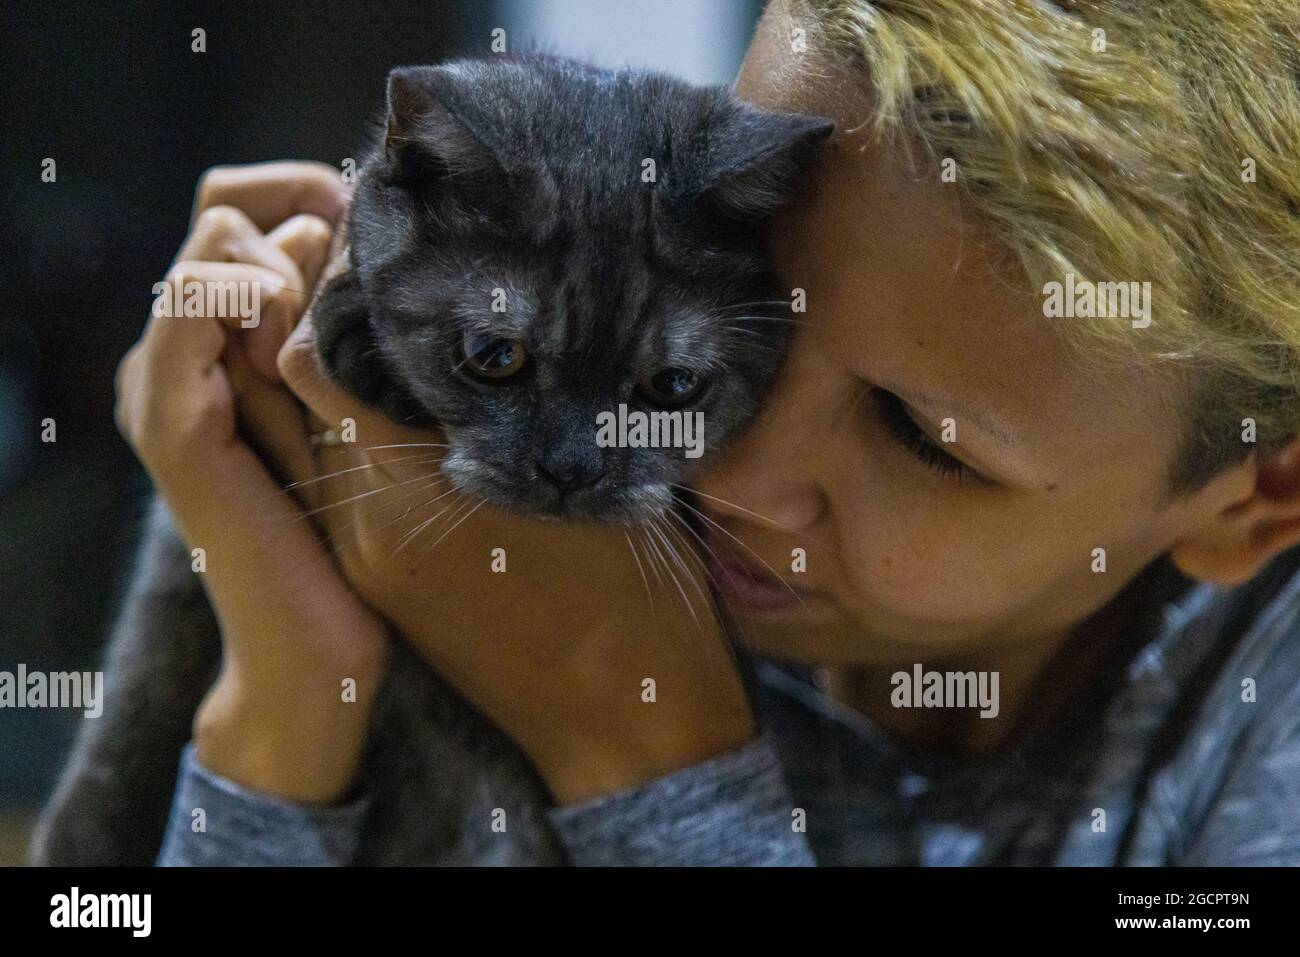 Tierische und menschliche Liebe. Schwarze Kätzchen werden von seinem Besitzer kuschelt. Die blonde Frau drückt zärtlich ihren Kopf gegen die junge Katze Stockfoto